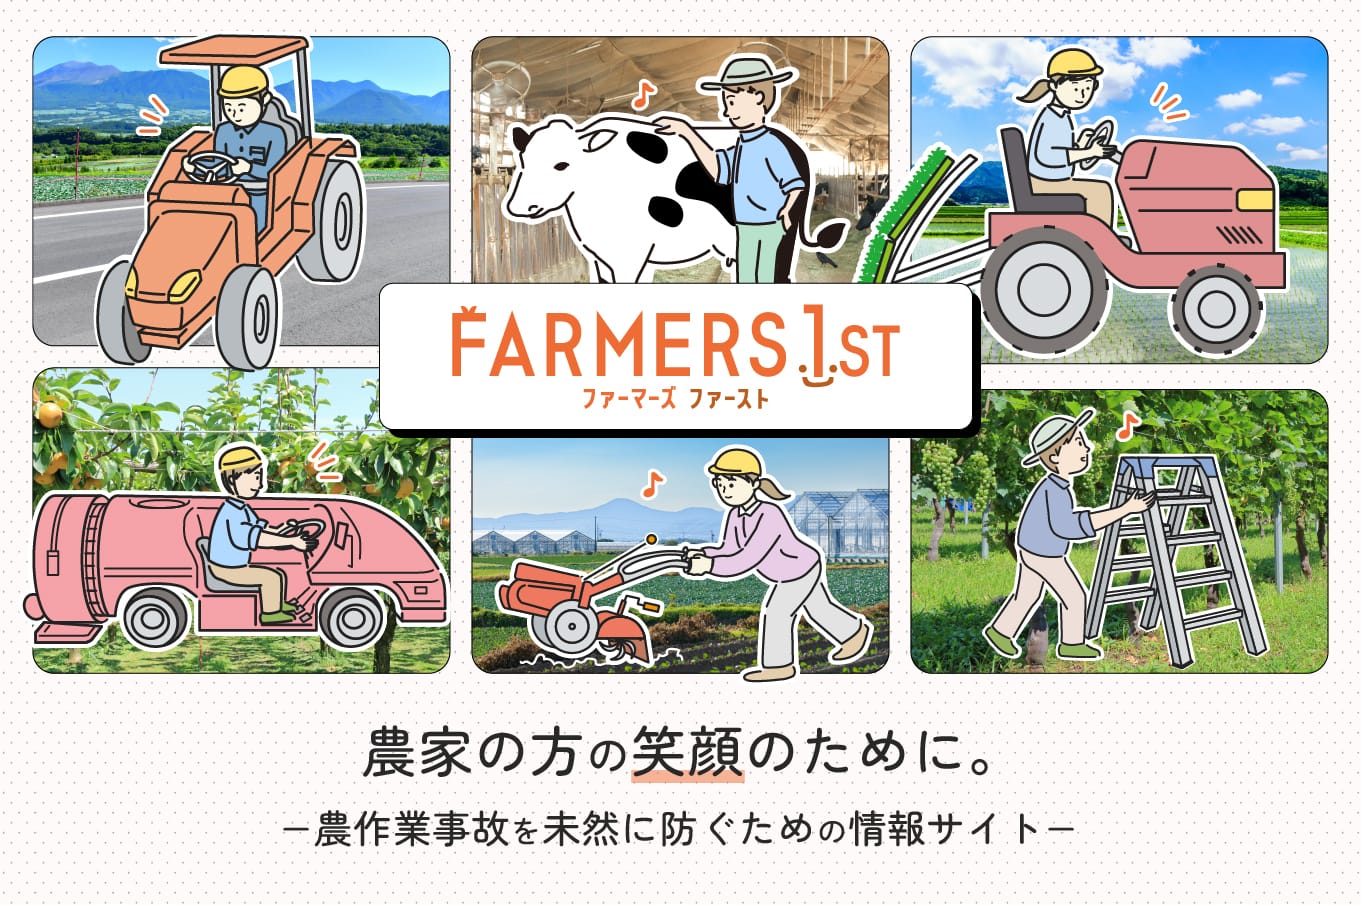 FARMERS 1ST